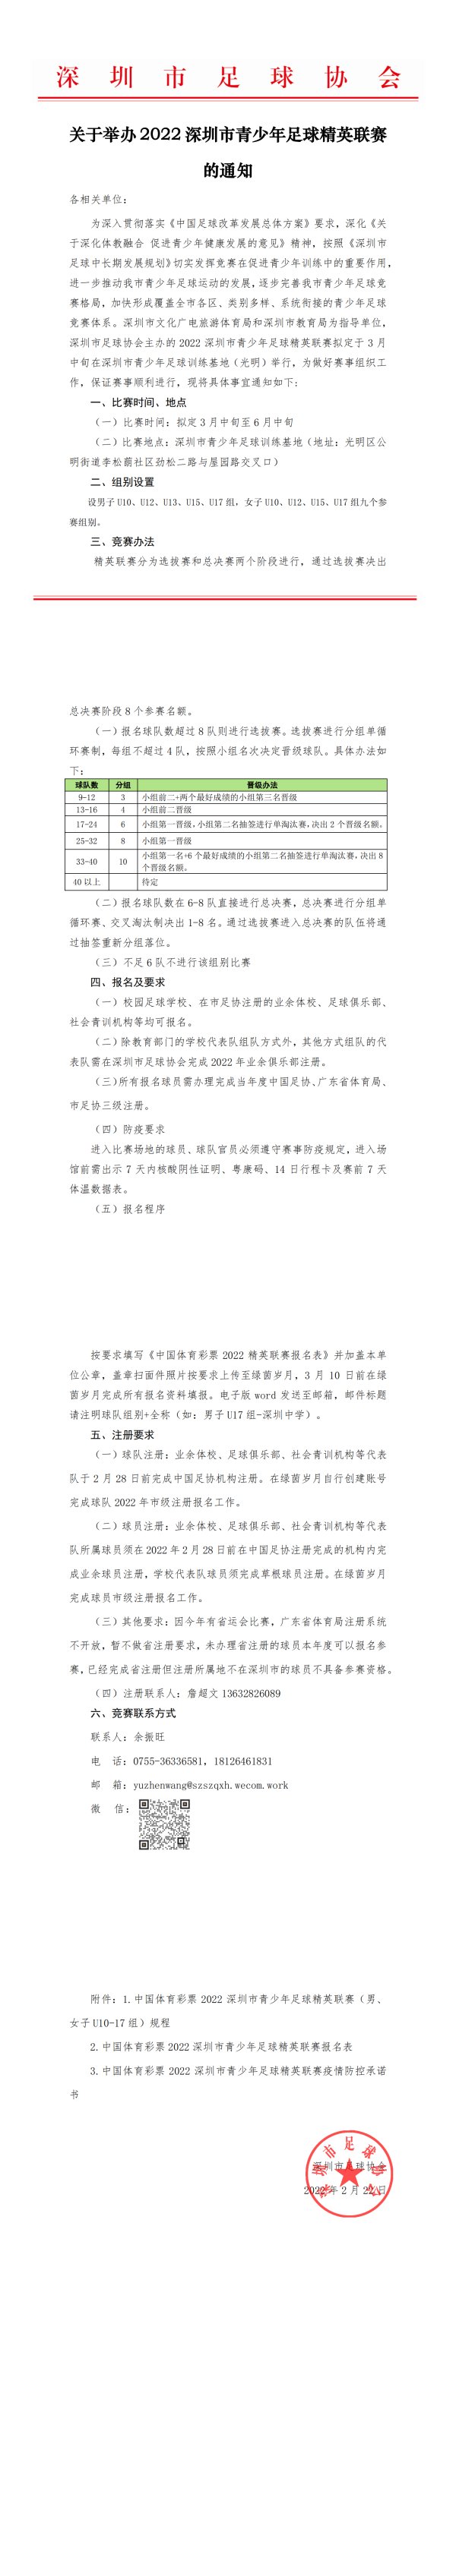 关于2022深圳市青少年足球精英联赛报名的通知0222_00.png